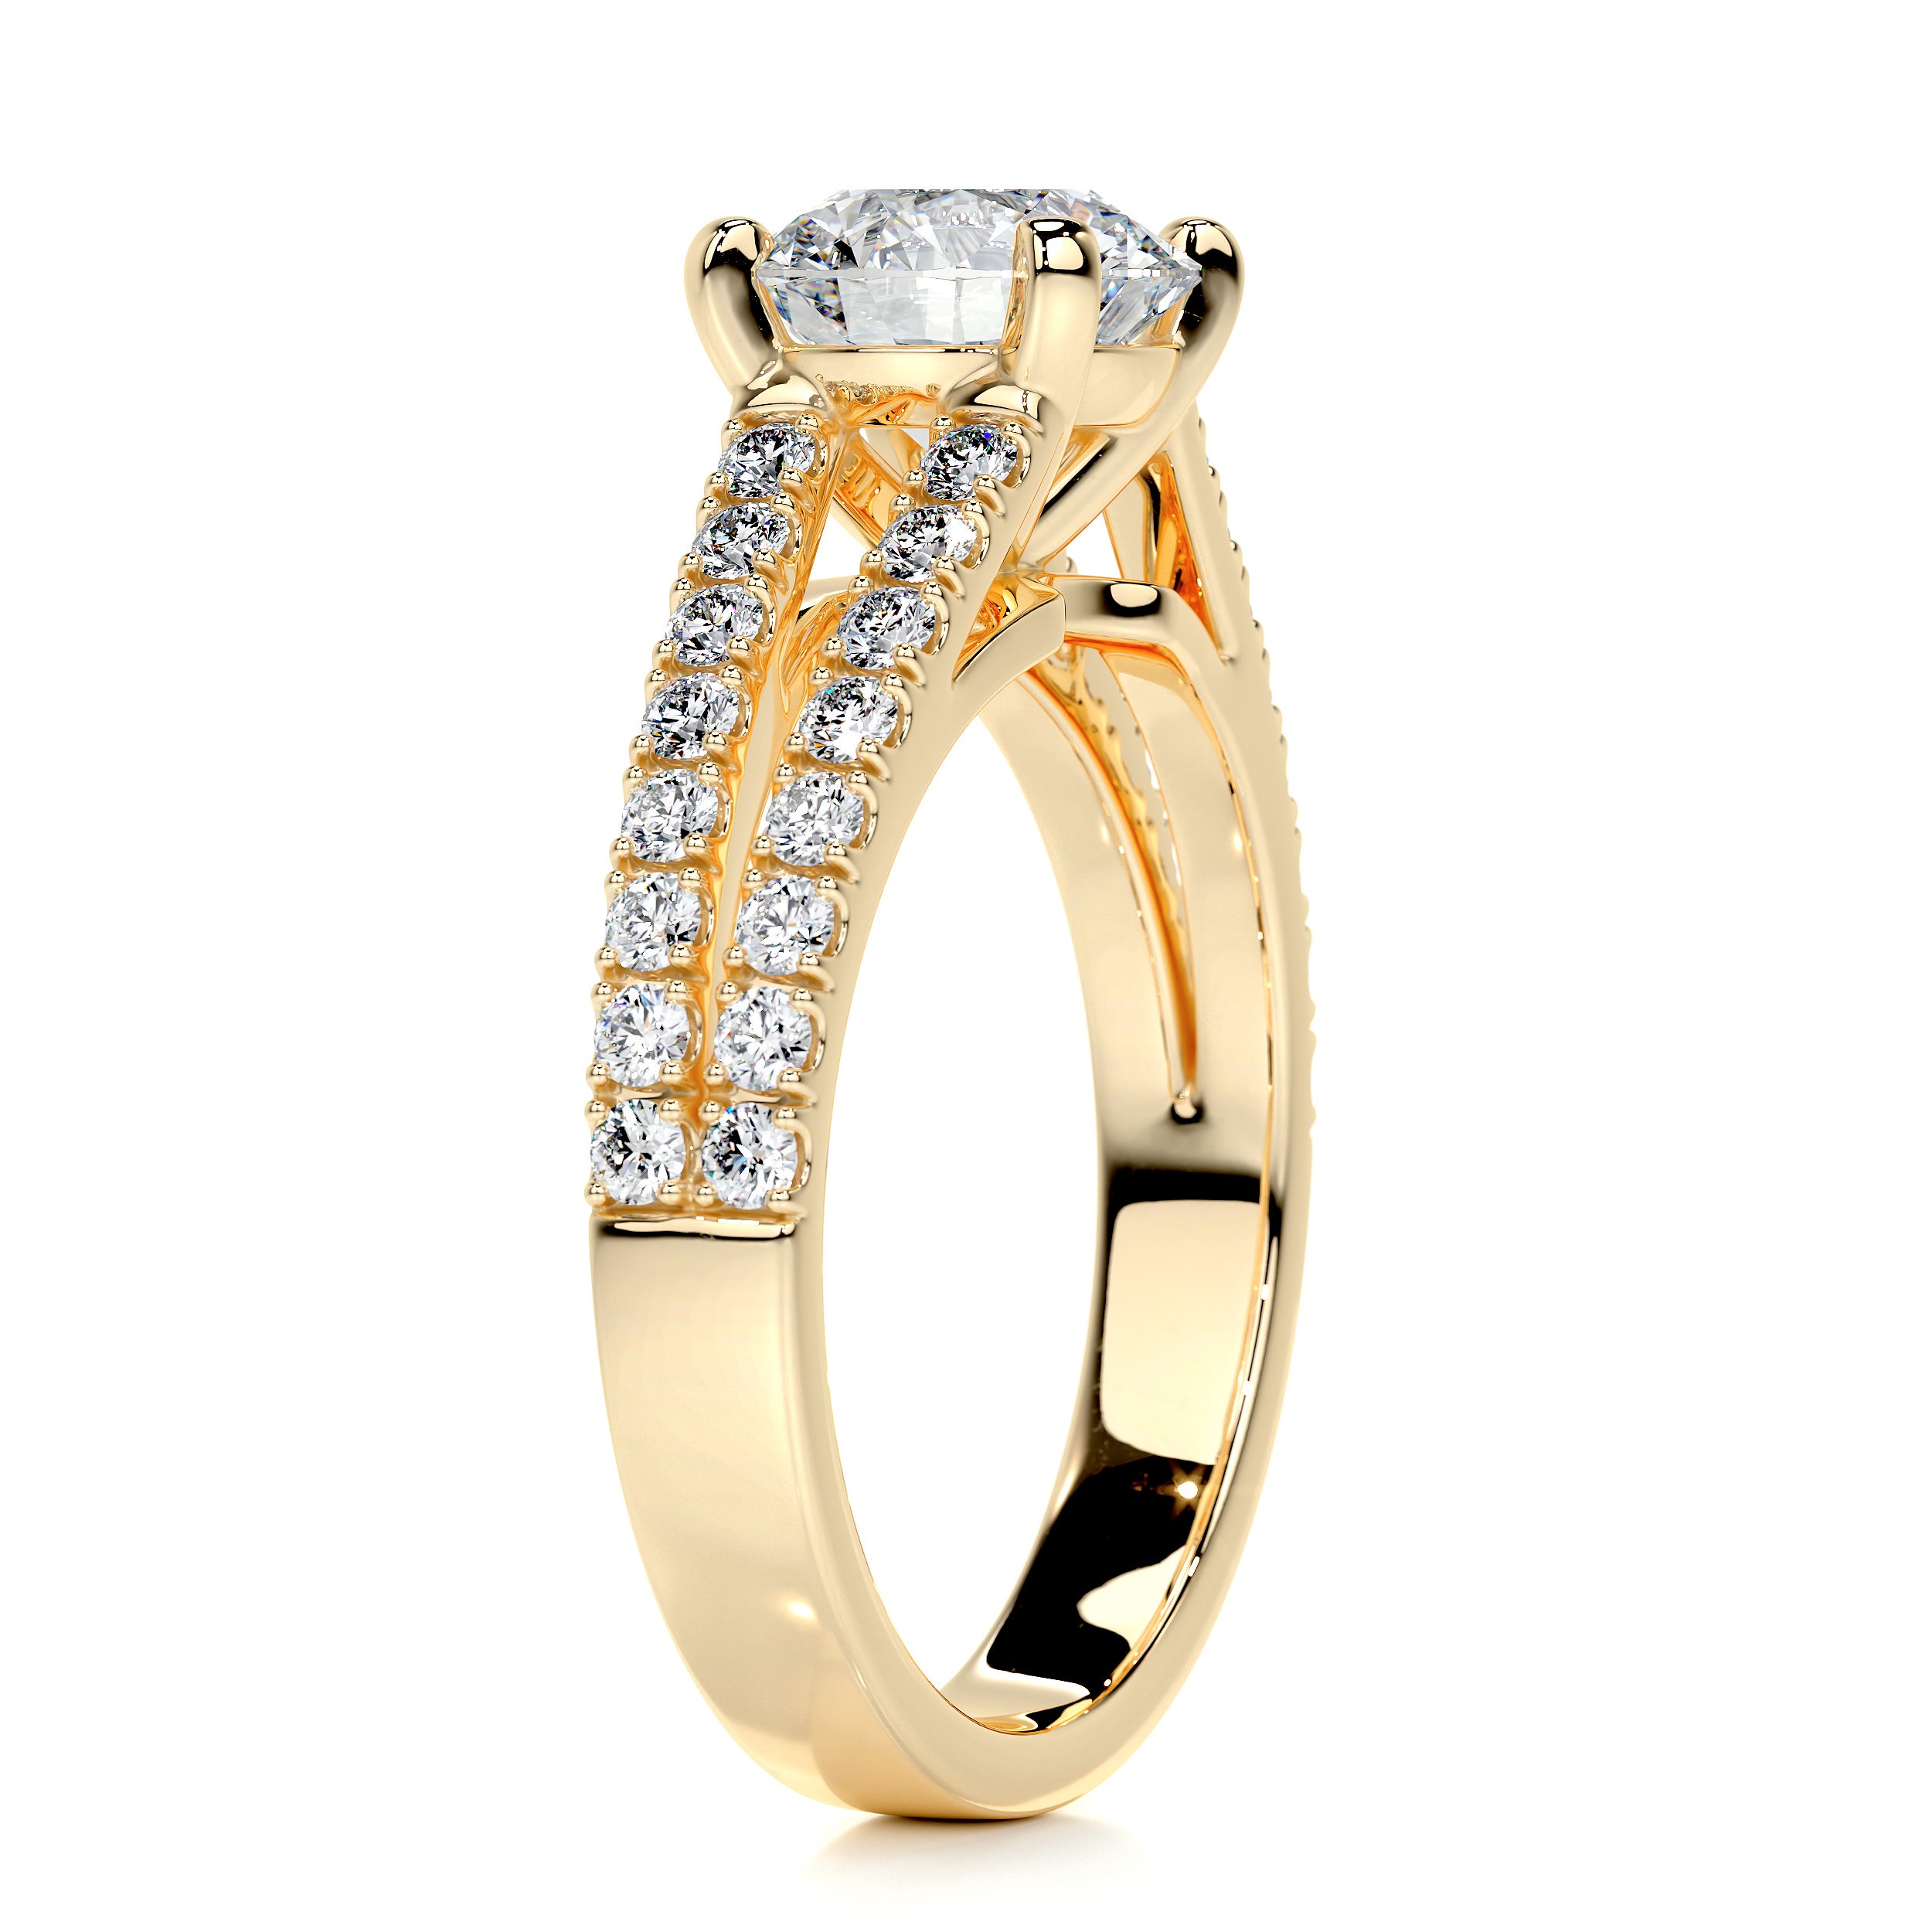 Sadie Diamond Engagement Ring -18K Yellow Gold